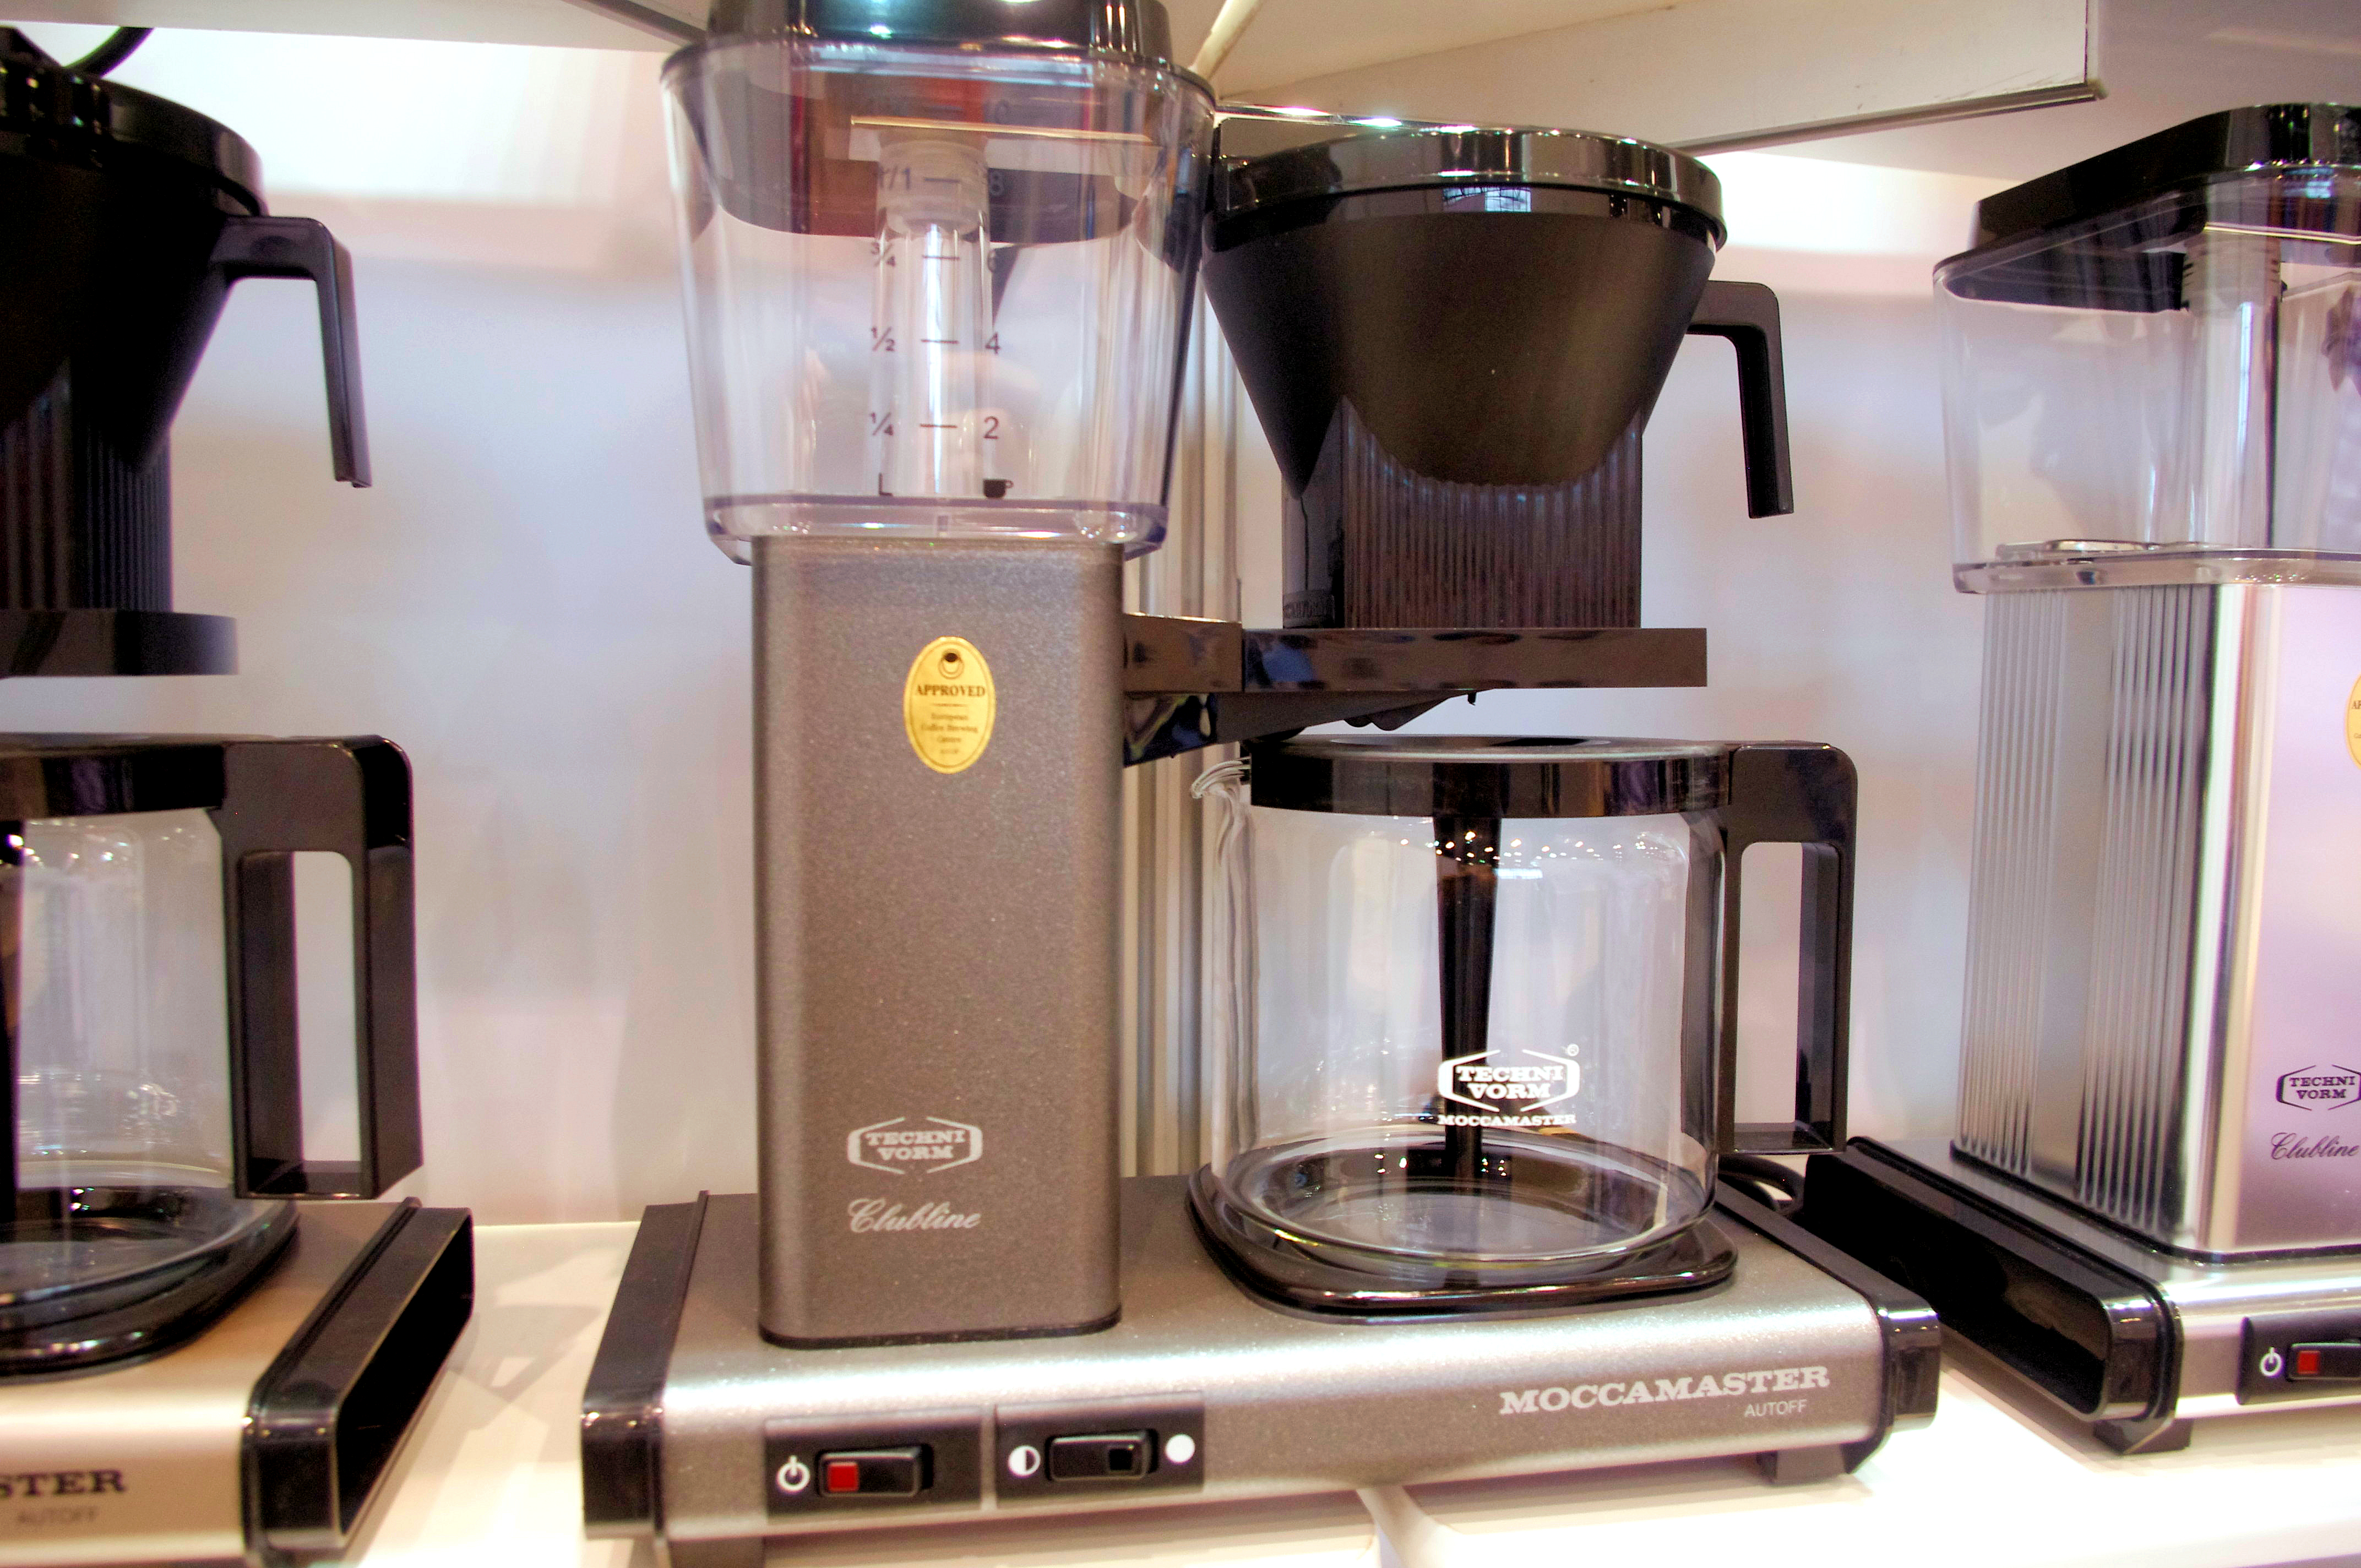 Bunn's new coffee maker brews for better taste - CNET